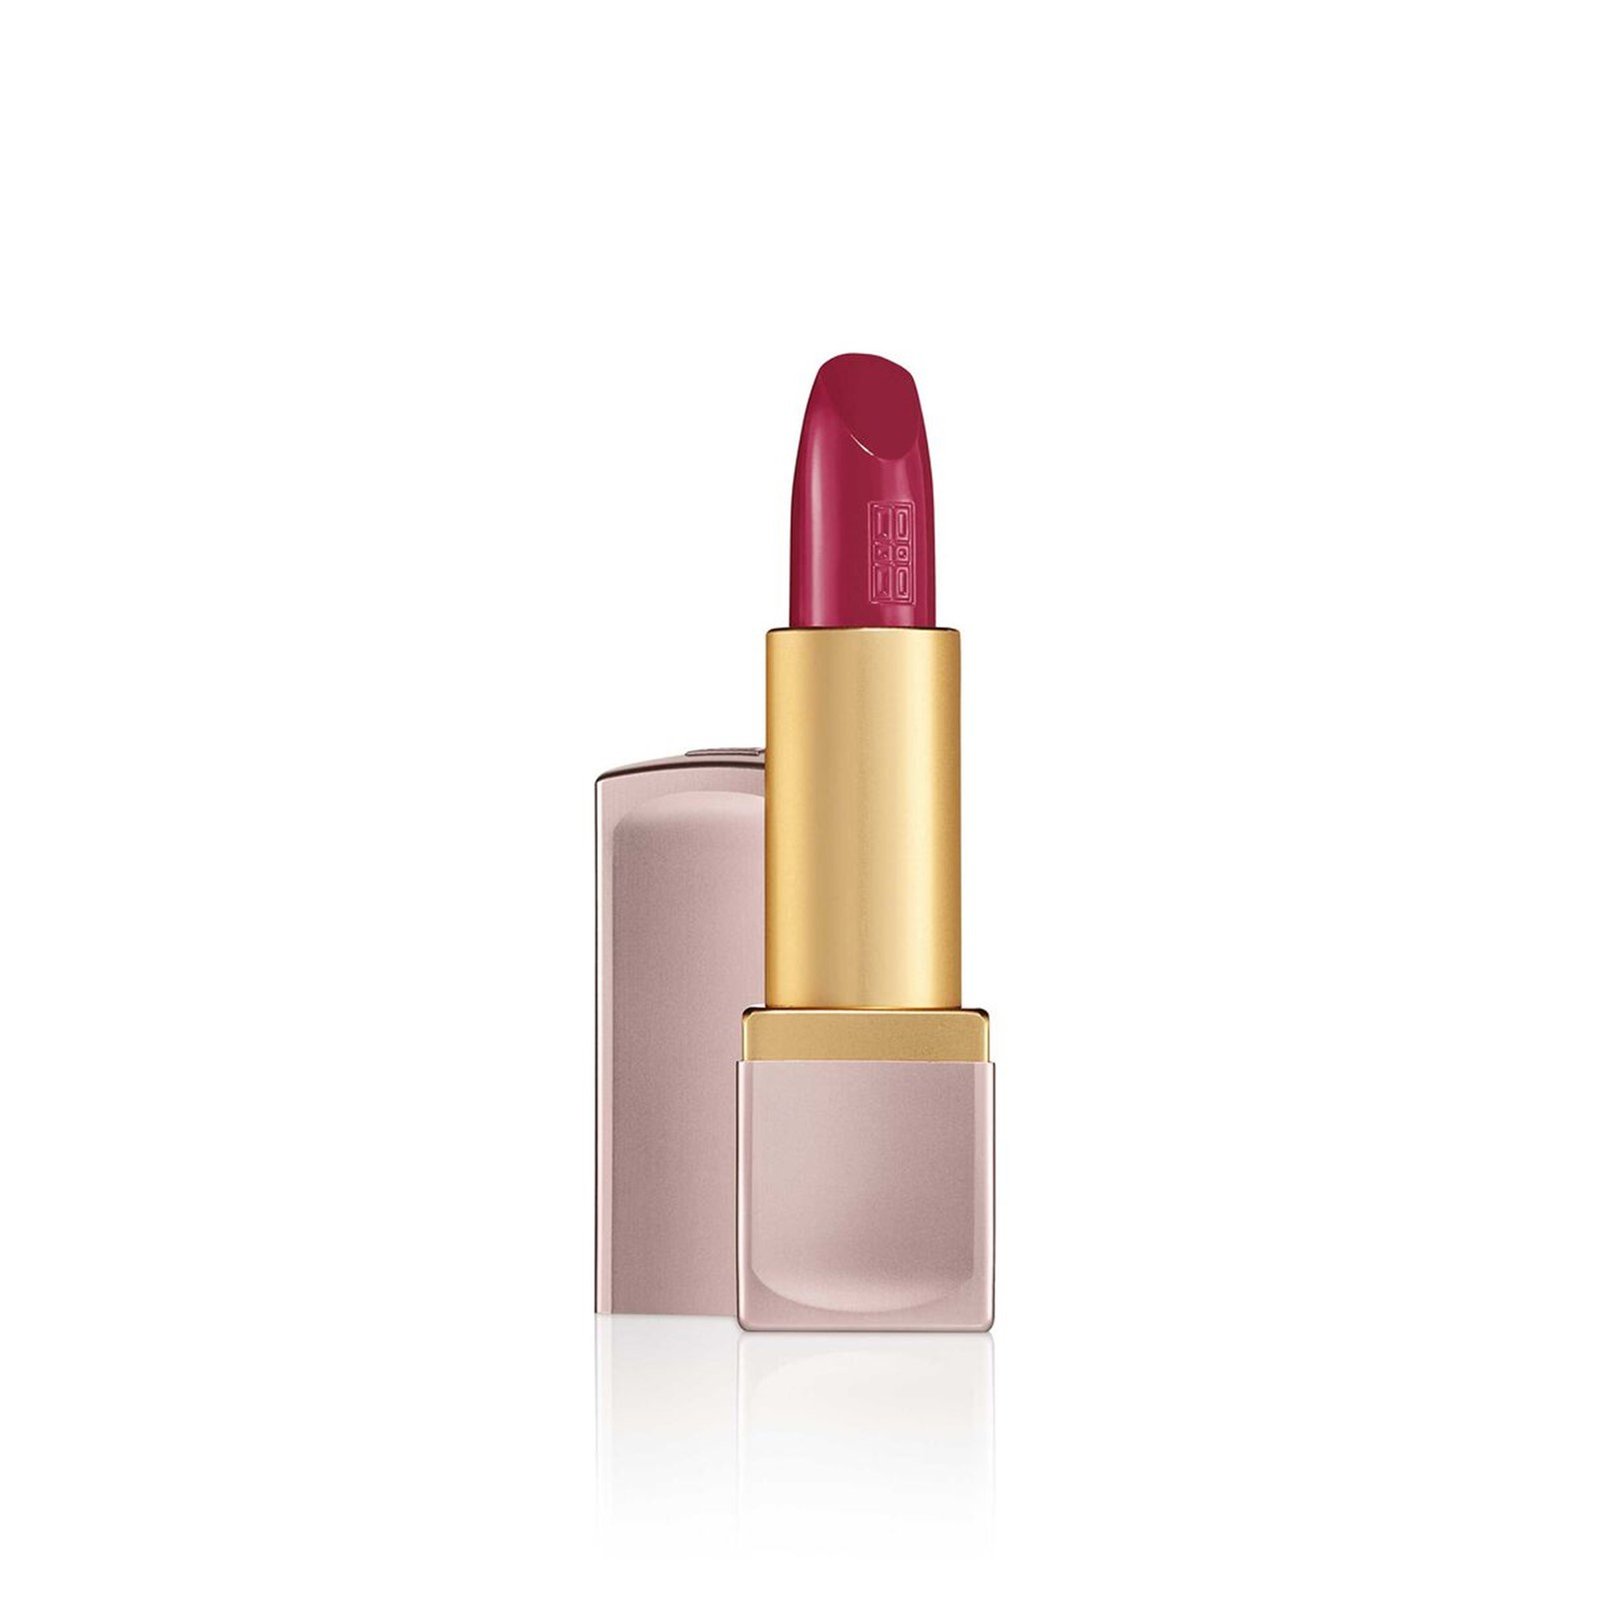 Elizabeth Arden Lip Color Lipstick 15 Berry Empowered 4g (0.14 oz)